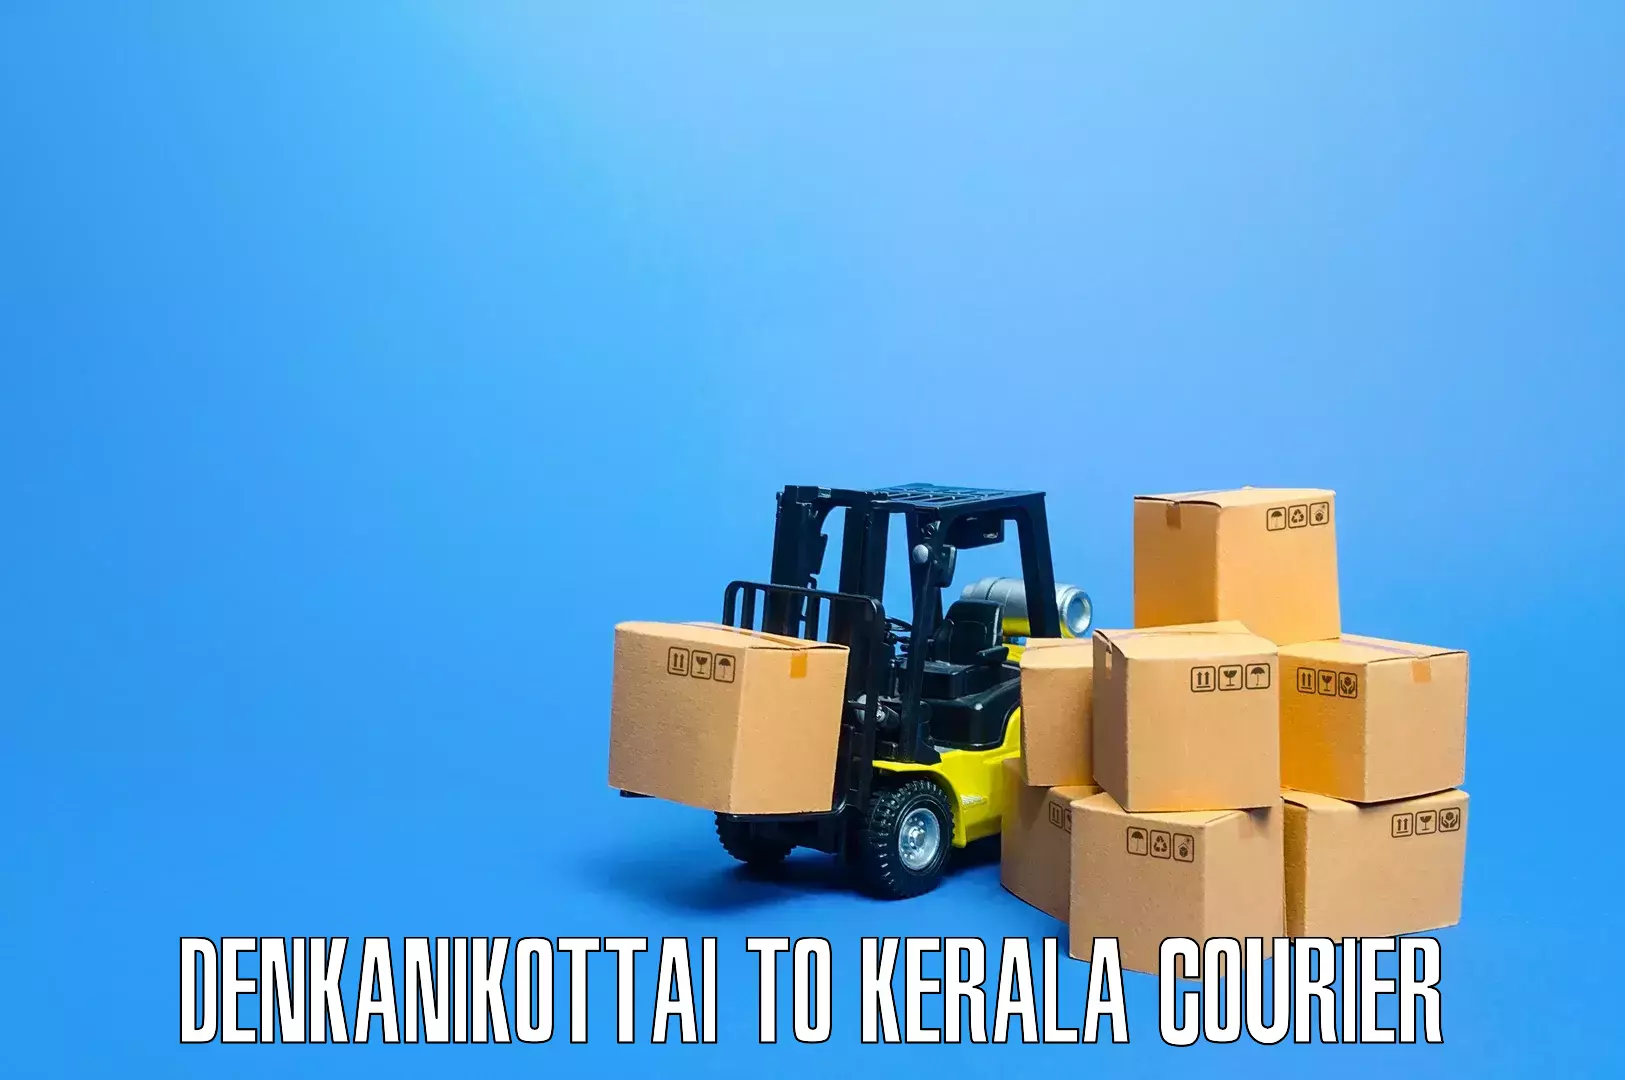 Household goods transport Denkanikottai to Kerala